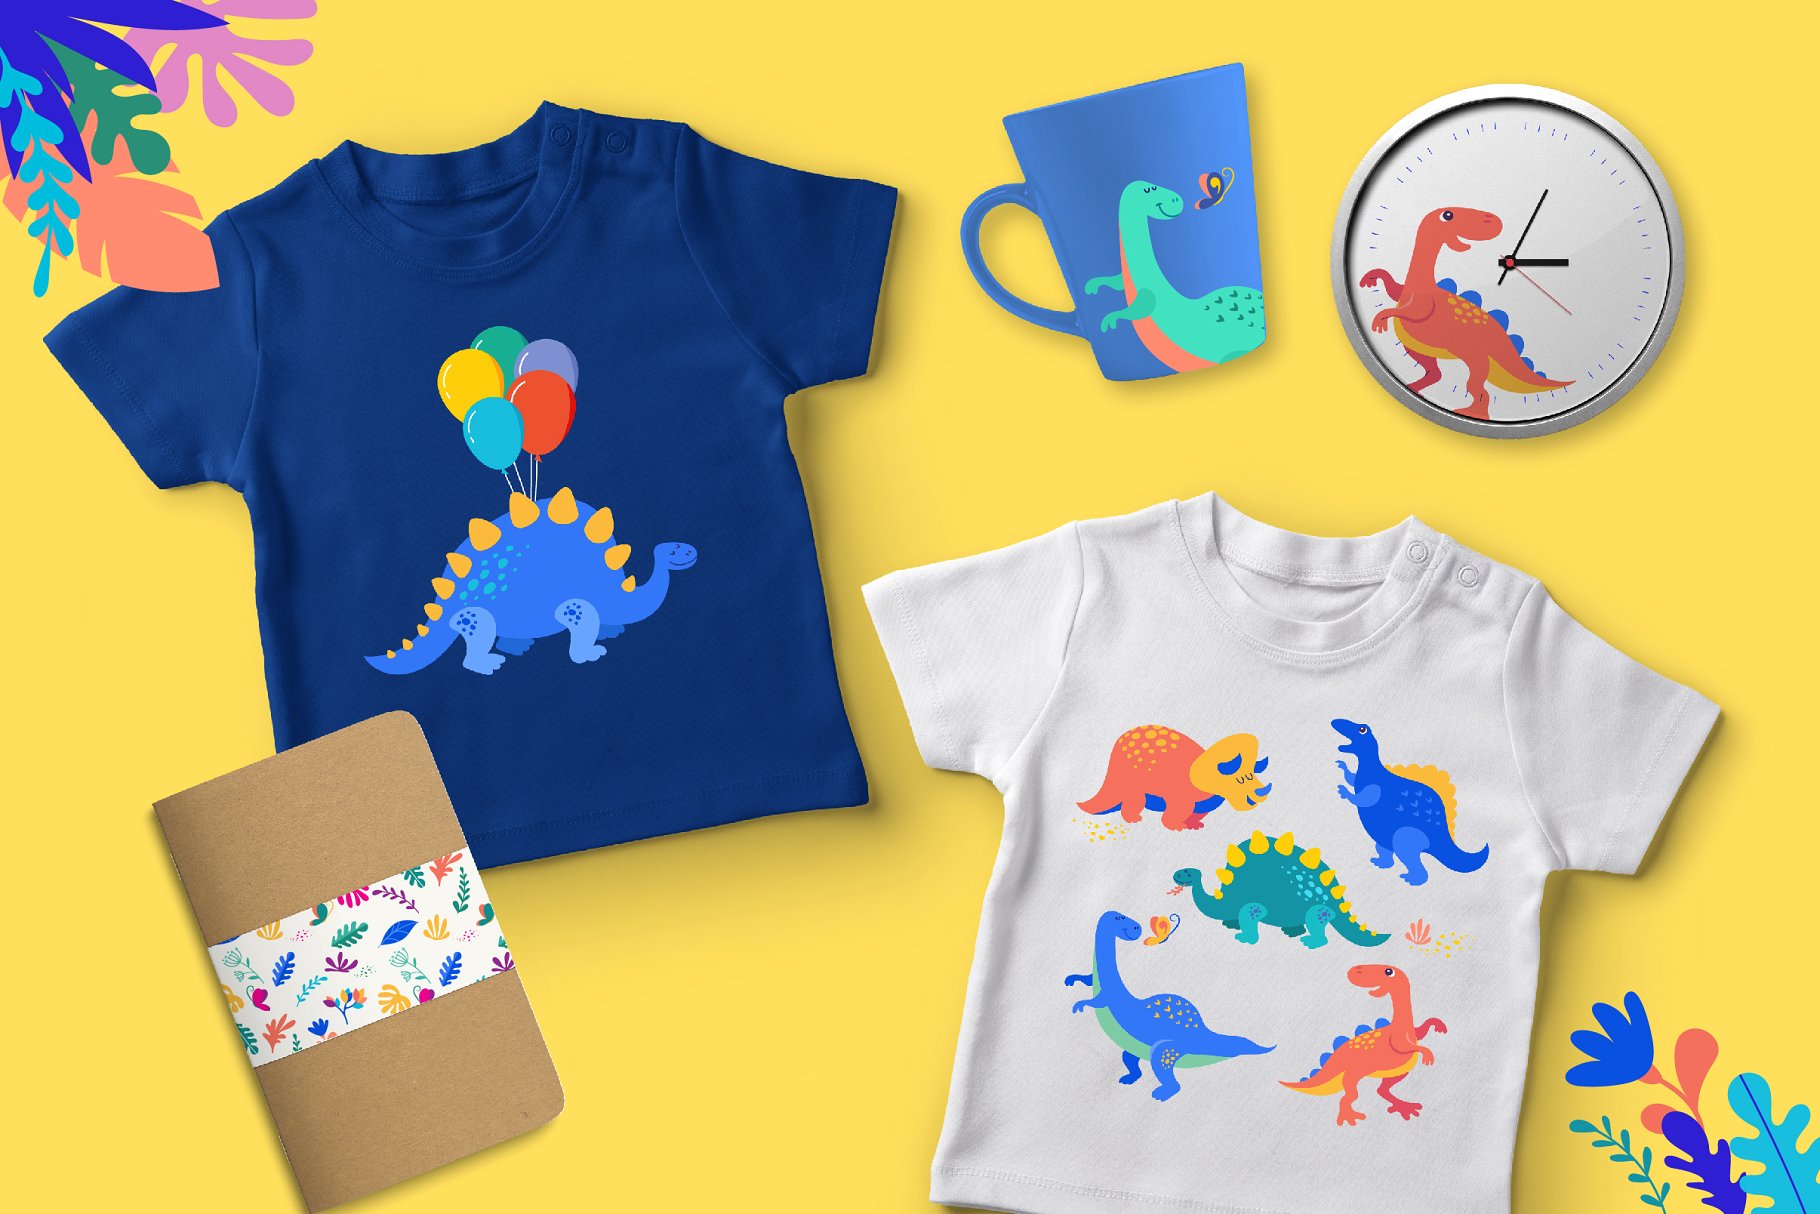 可爱的恐龙插图设计工具包 it’s DINO time – cute dinosaurs kit插图(1)